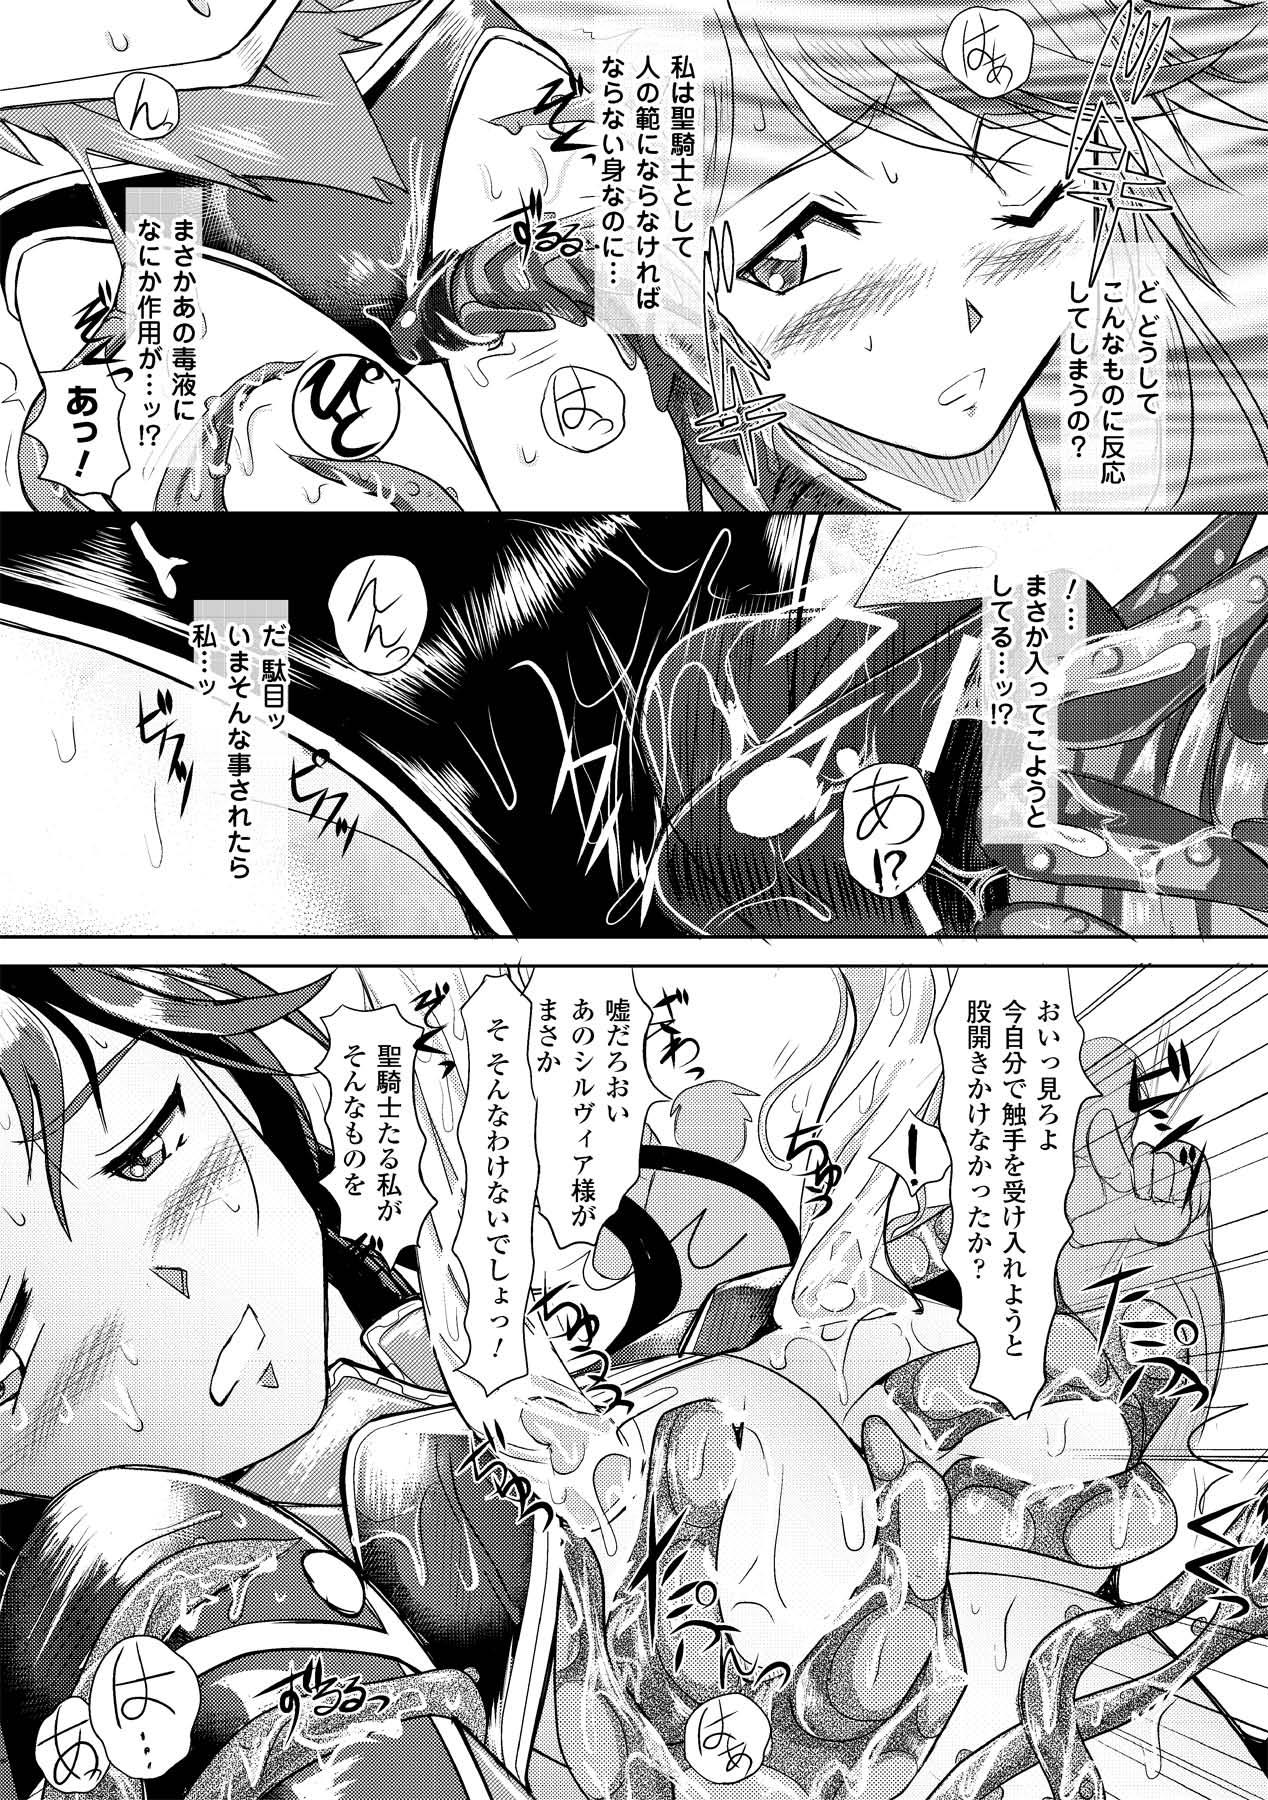 Climax Shokushuu Injoku | The Rape of Tentacle Anthology Comics Vol.2 Teensnow - Page 11